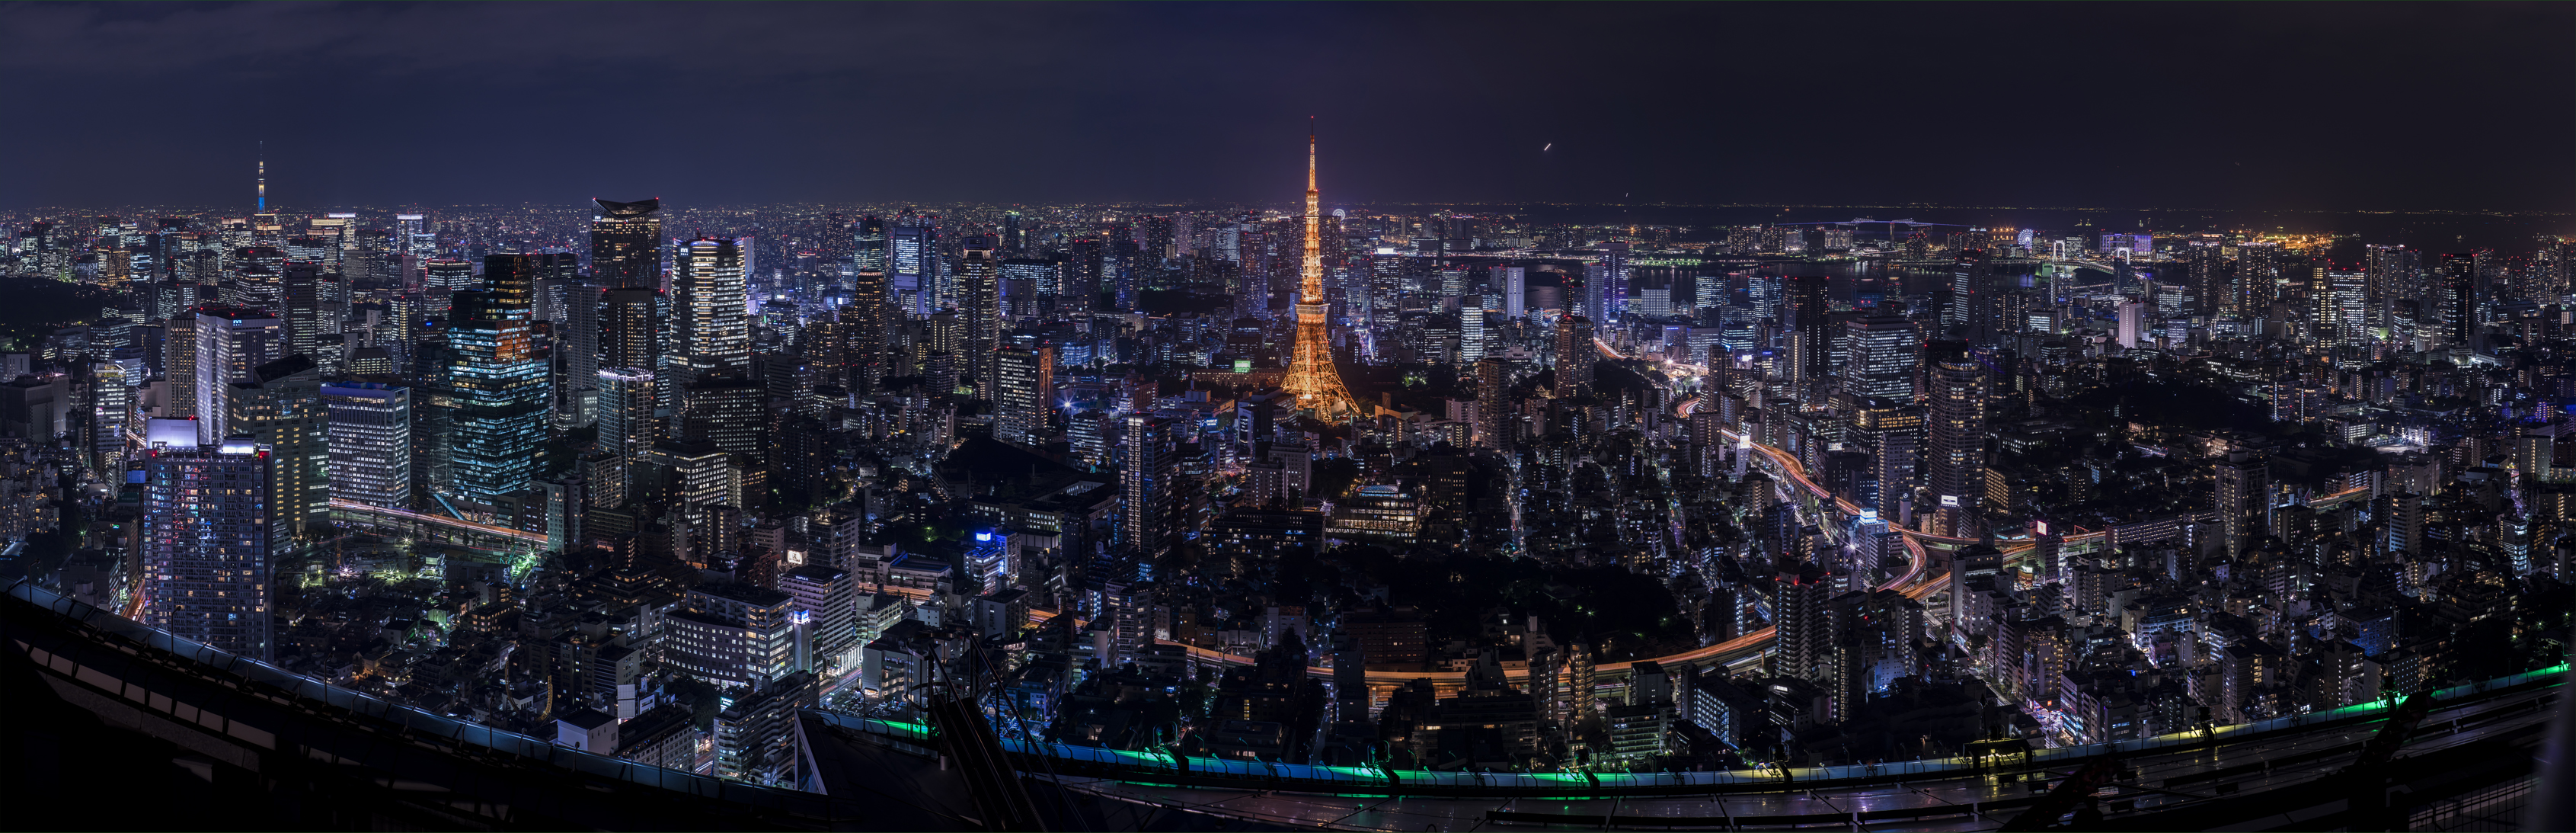 Скачать обои бесплатно Города, Япония, Токио, Сделано Человеком, Токийская Башня картинка на рабочий стол ПК